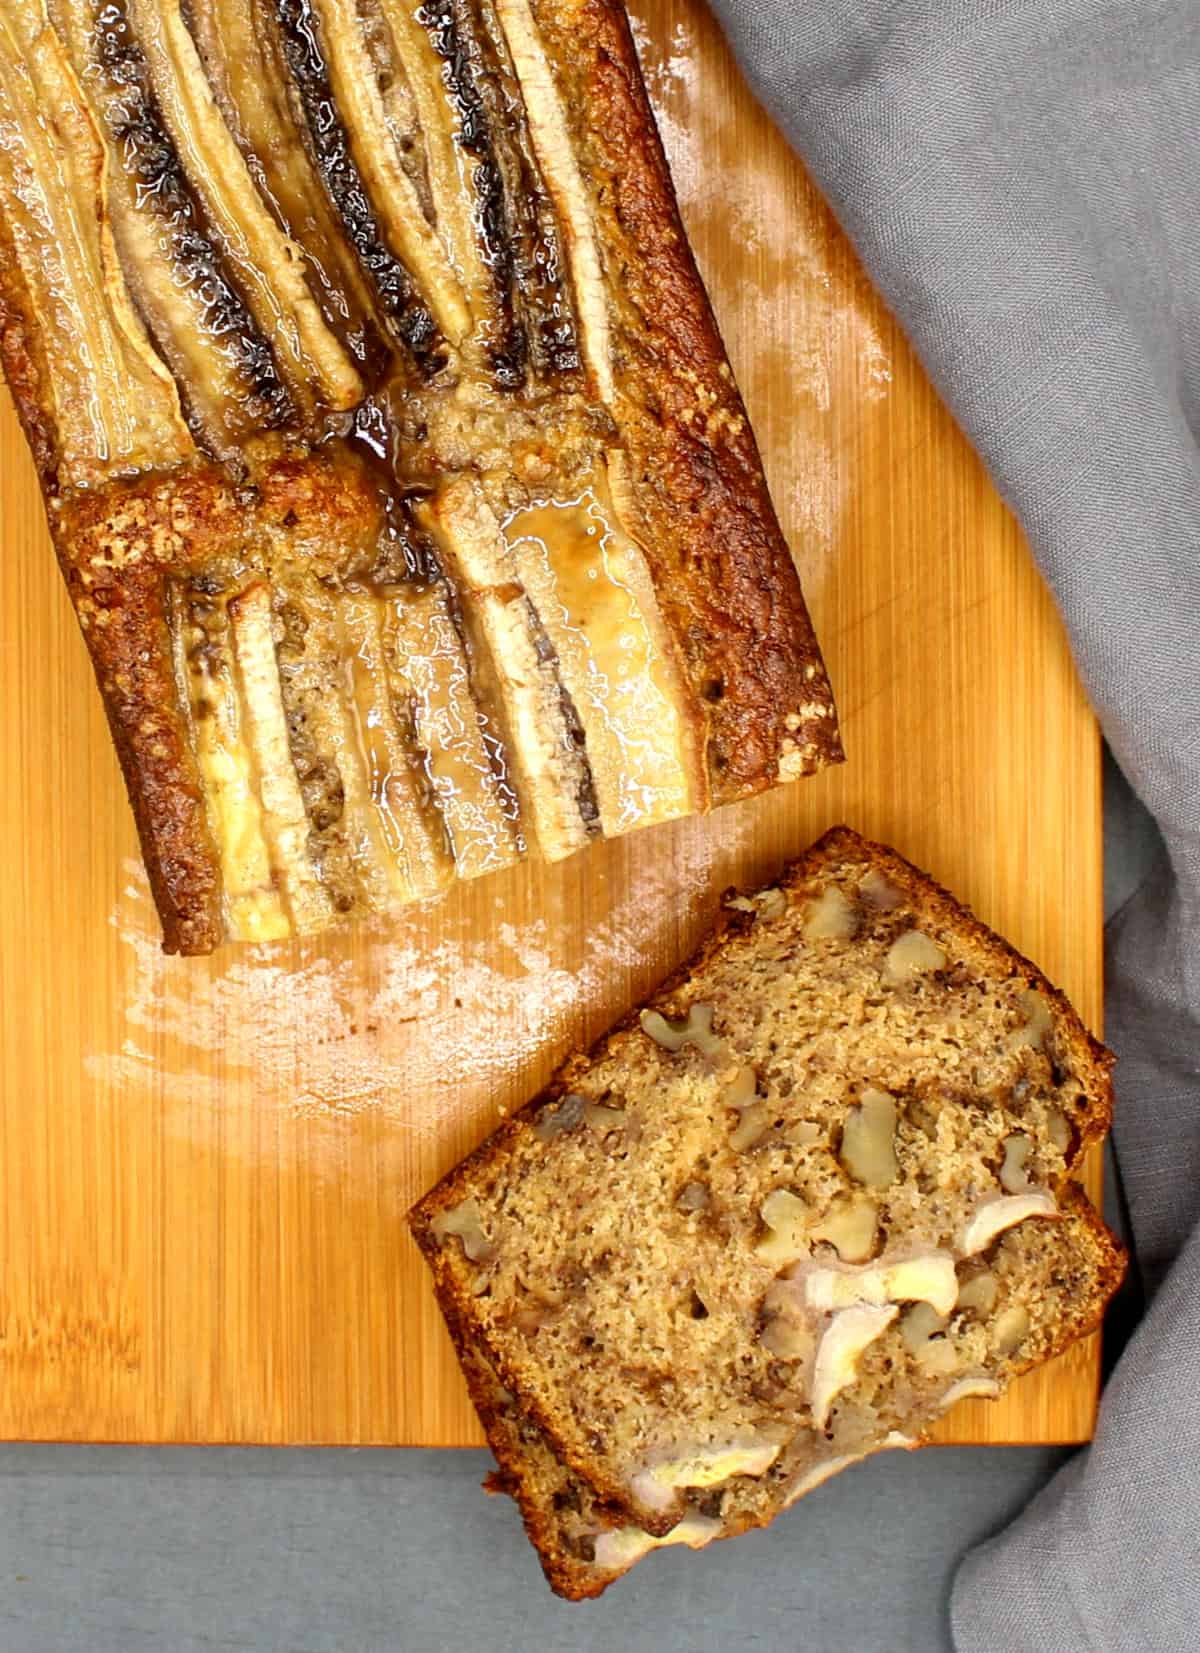 Eggless banana bread, sliced, on a chopping board.